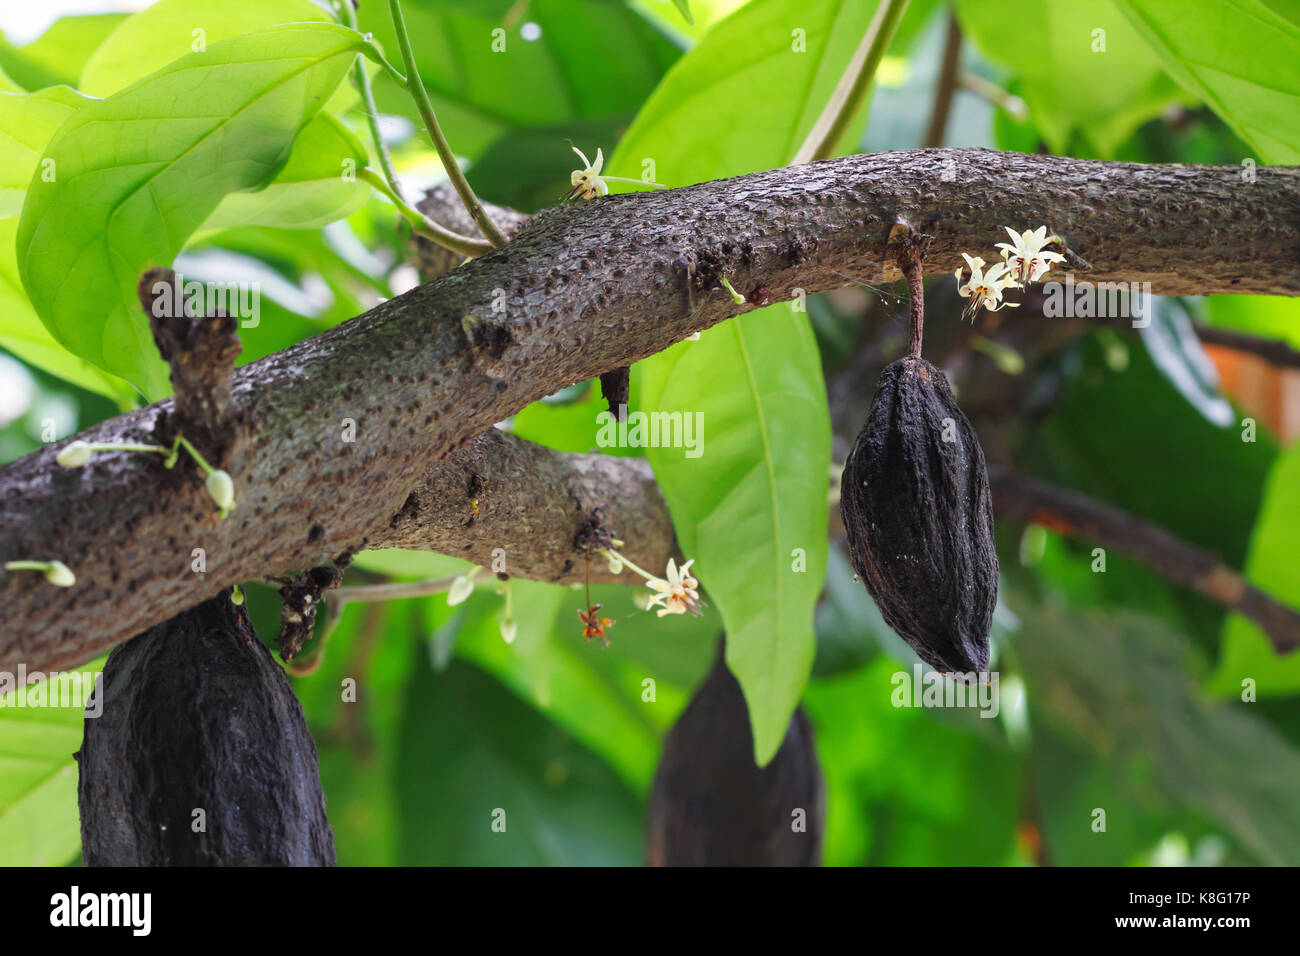 Árbol de cacao con flores y frutas. El cacao (cacao) granos utilizados para hacer un polvo de cacao y chocolate. Foto de stock